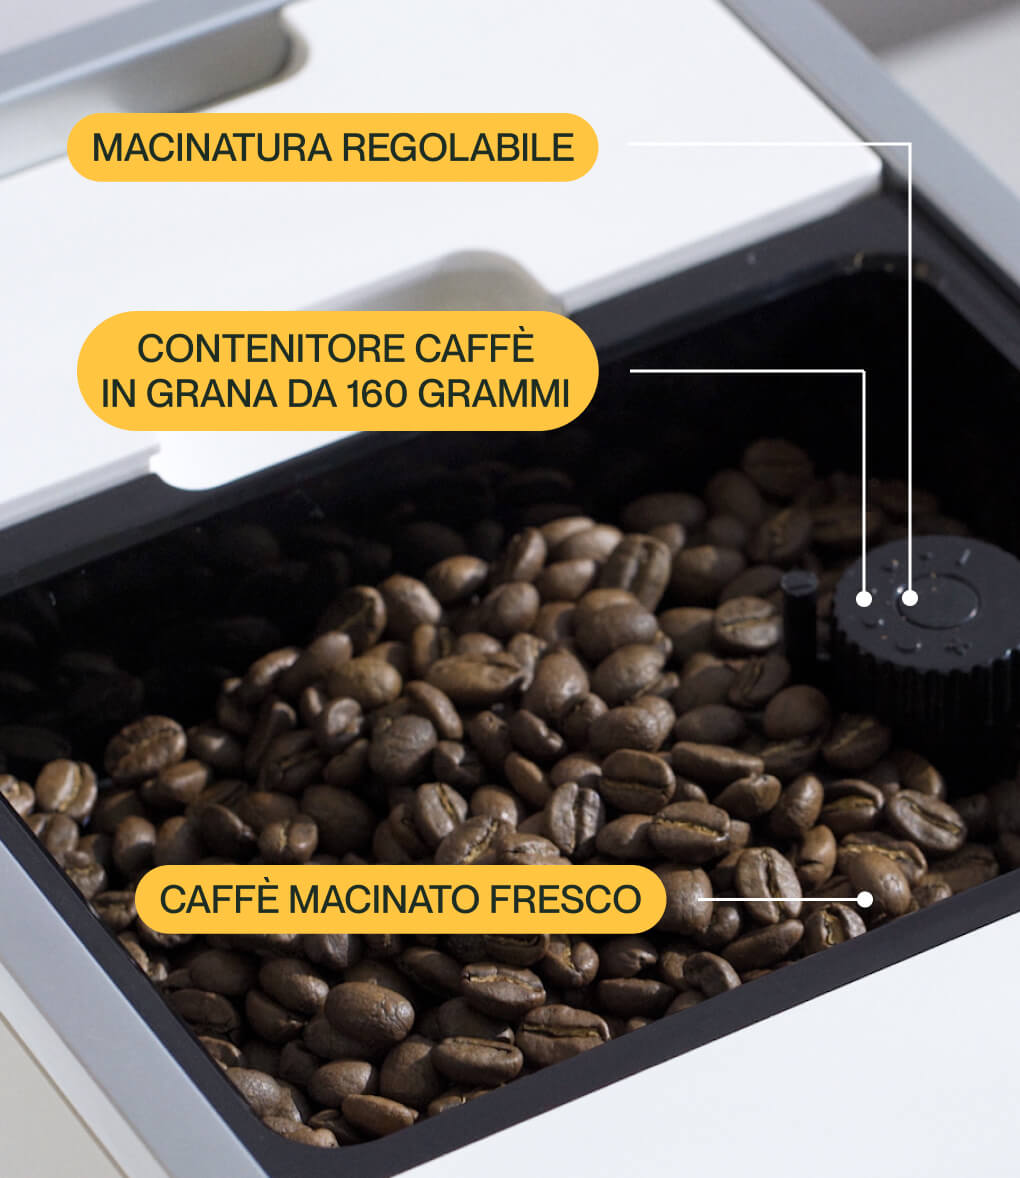 L'acqua del caffè espresso - Manutenzione e Regolazione dell